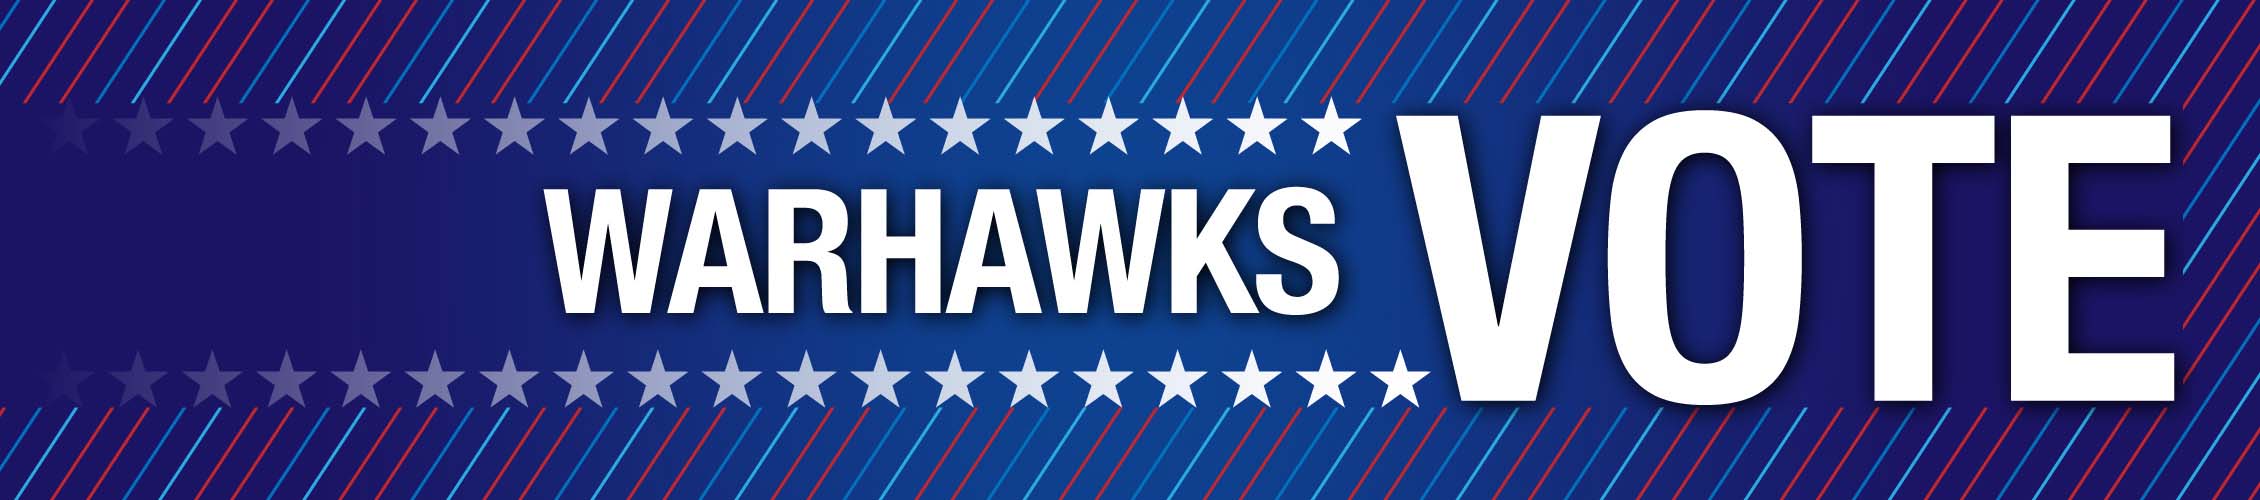 Warhawks Vote Banner Logo